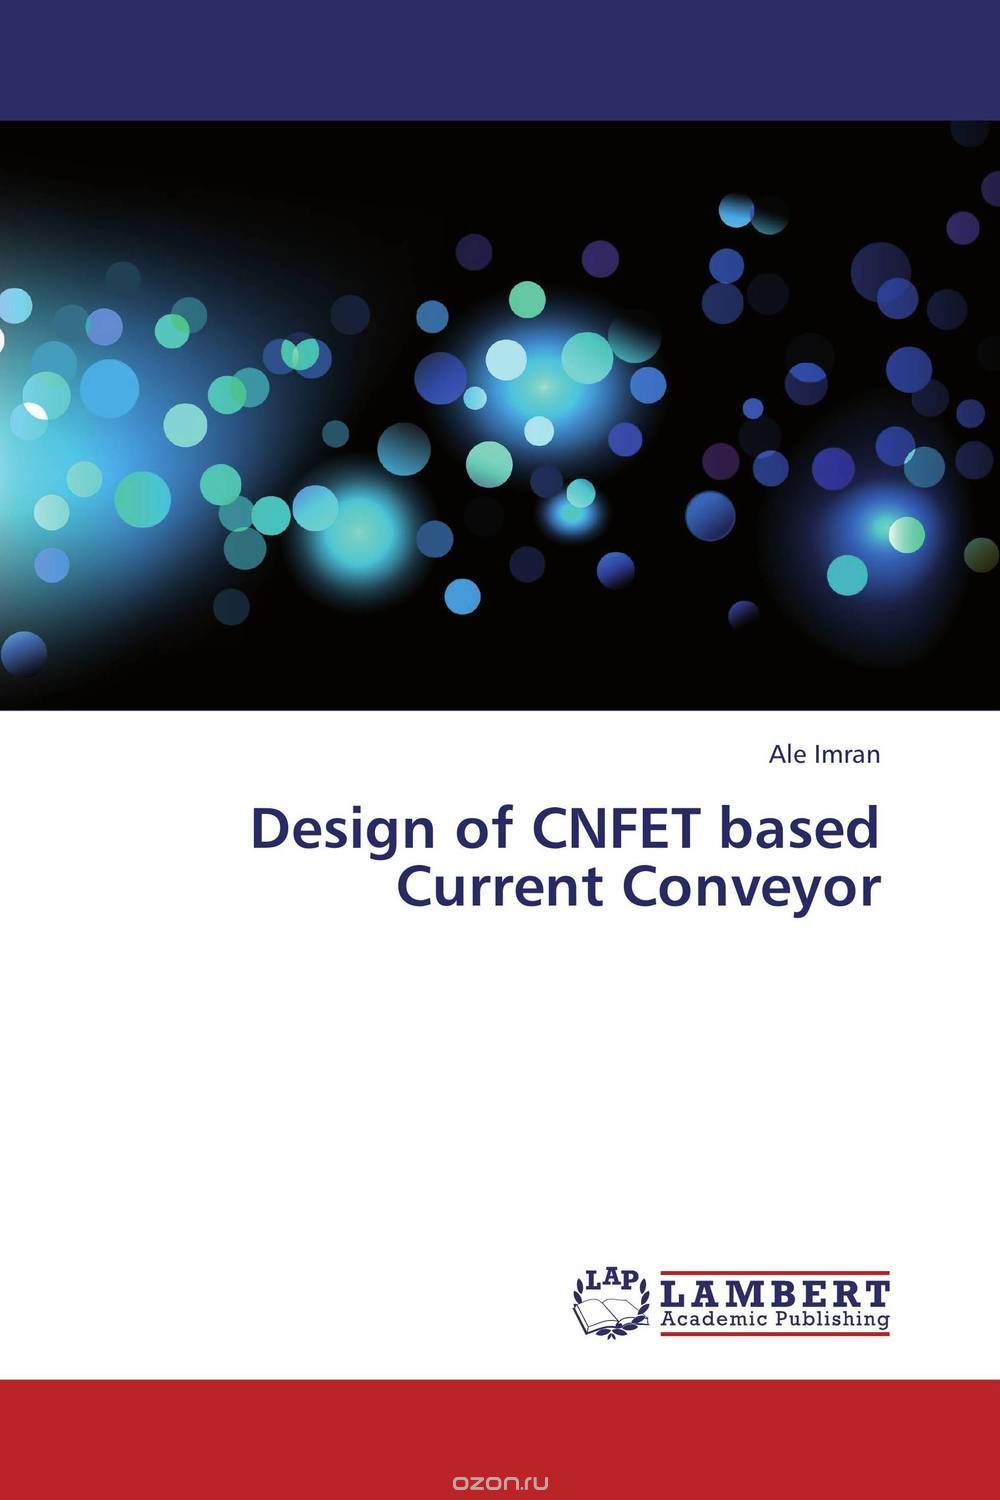 Скачать книгу "Design of CNFET based Current Conveyor"